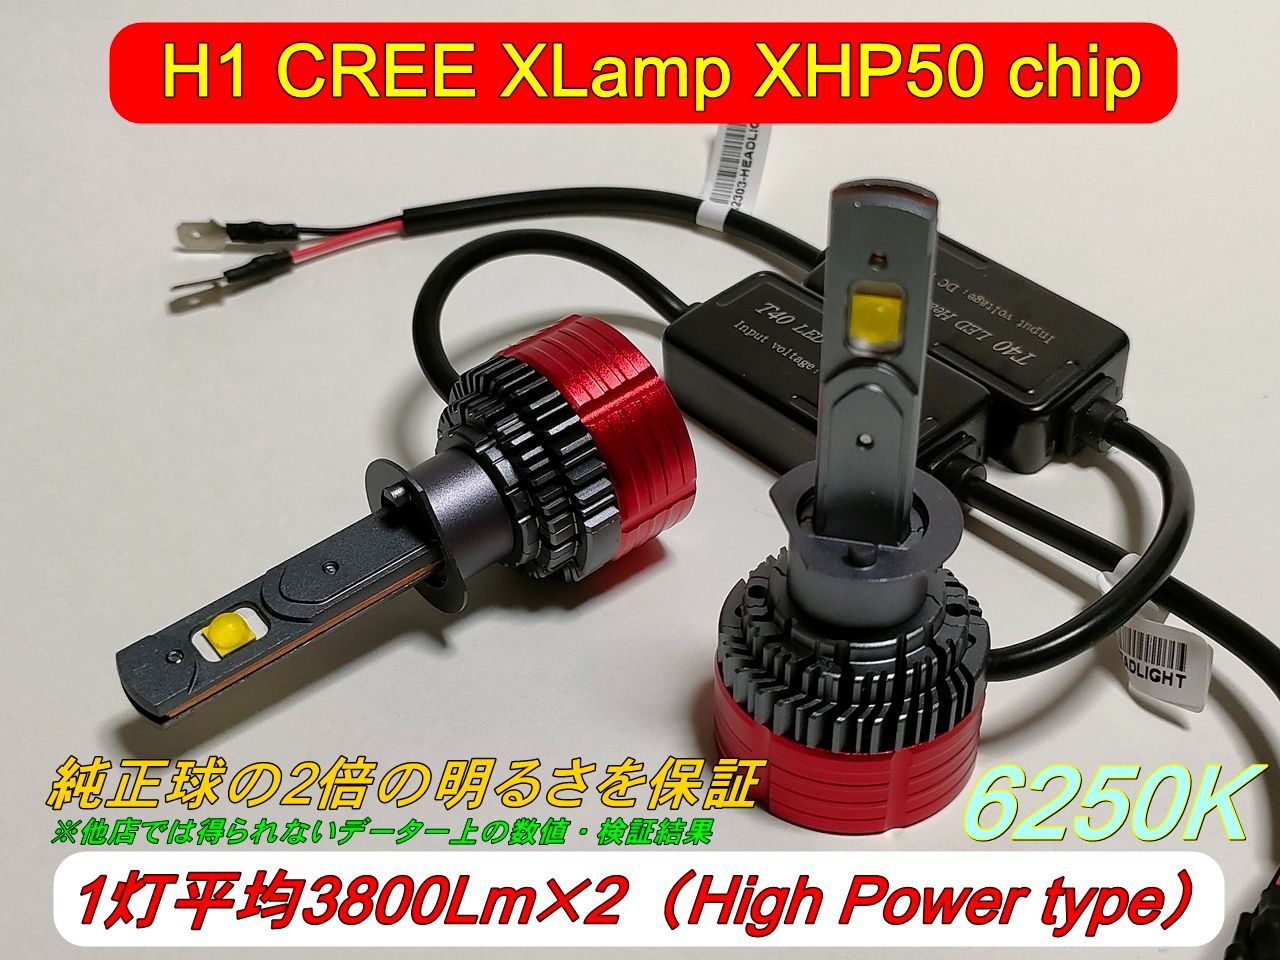 H8～H16対応 CREE XLamp XHP50 6250K 1灯約3800Lm×2 12v車用 ②